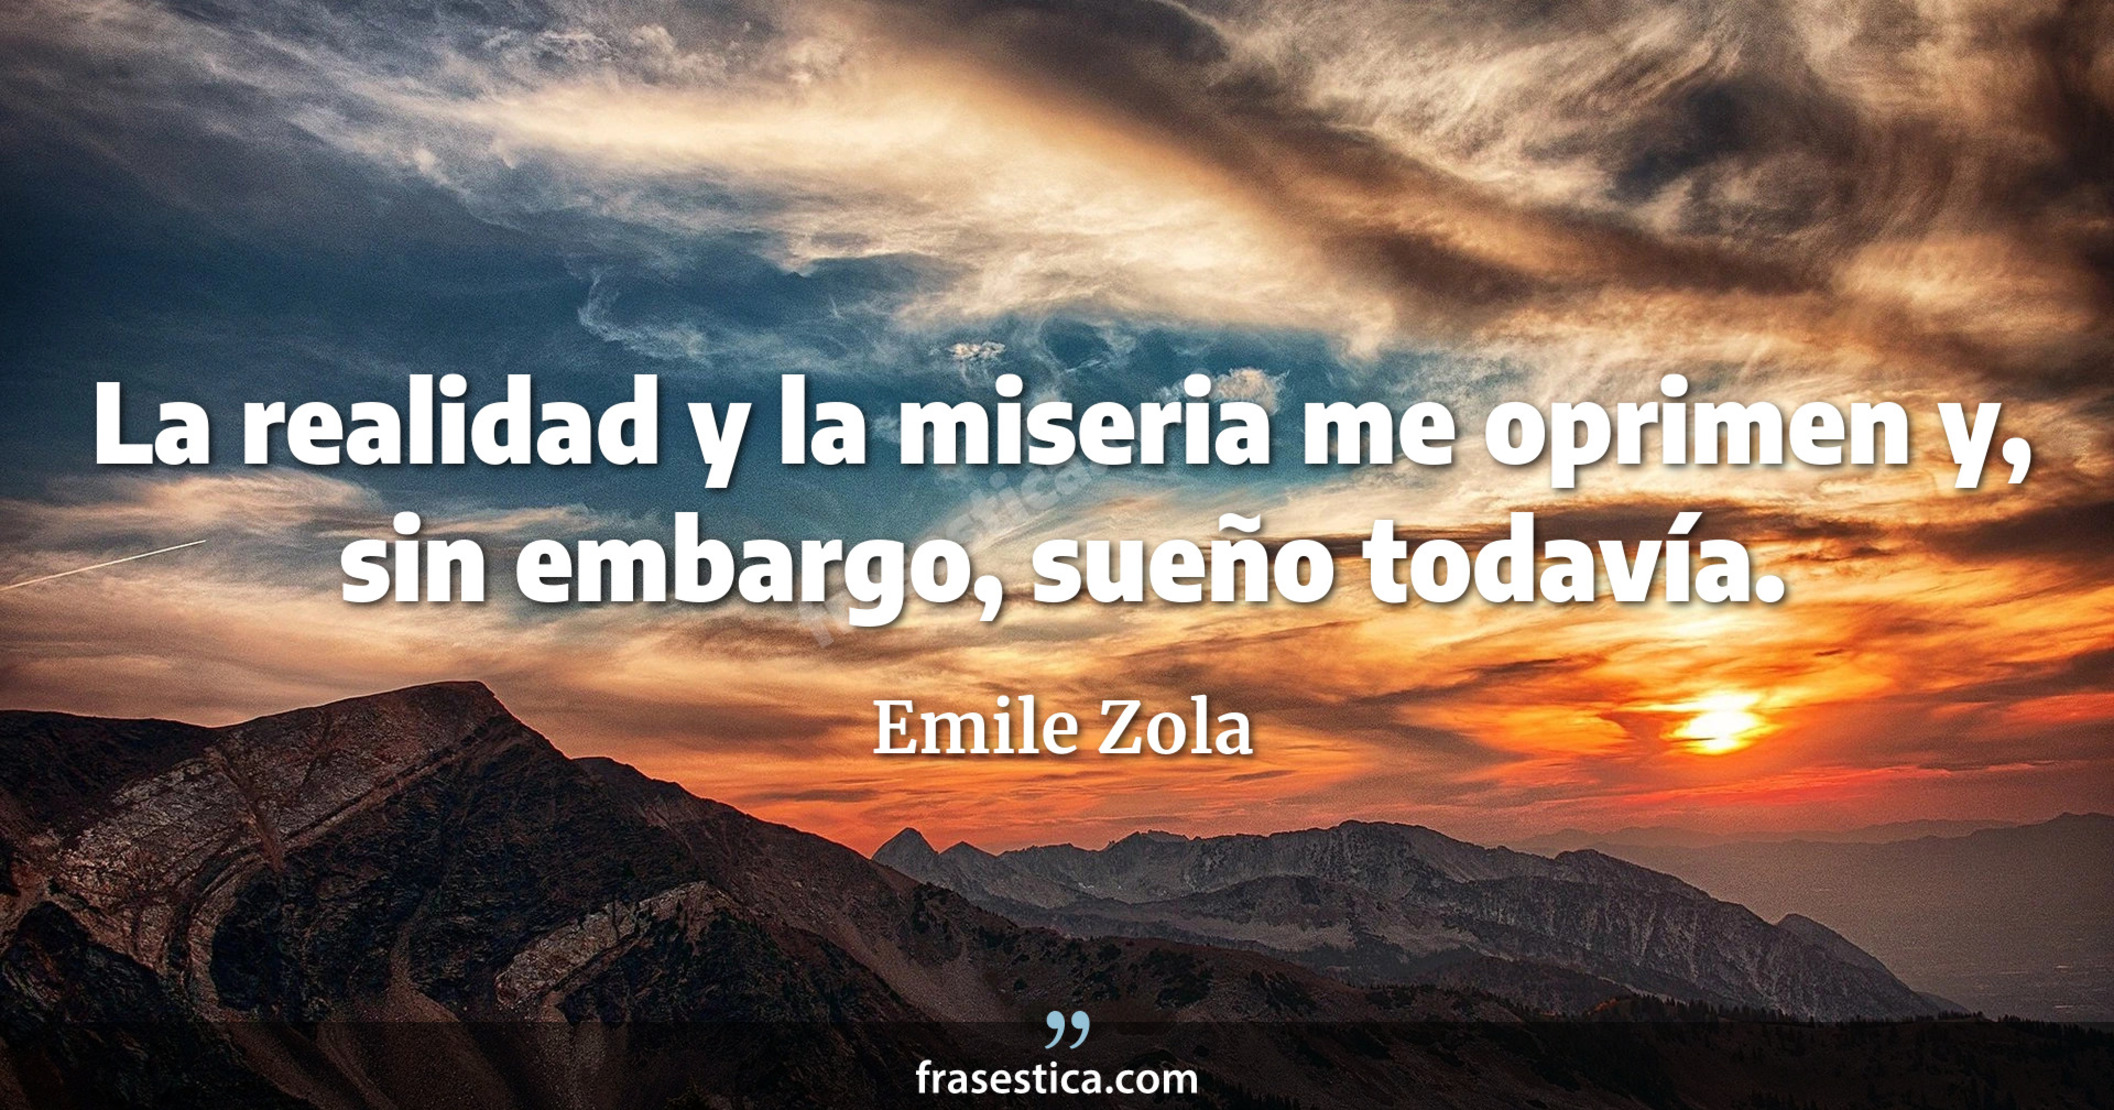 La realidad y la miseria me oprimen y, sin embargo, sueño todavía. - Emile Zola